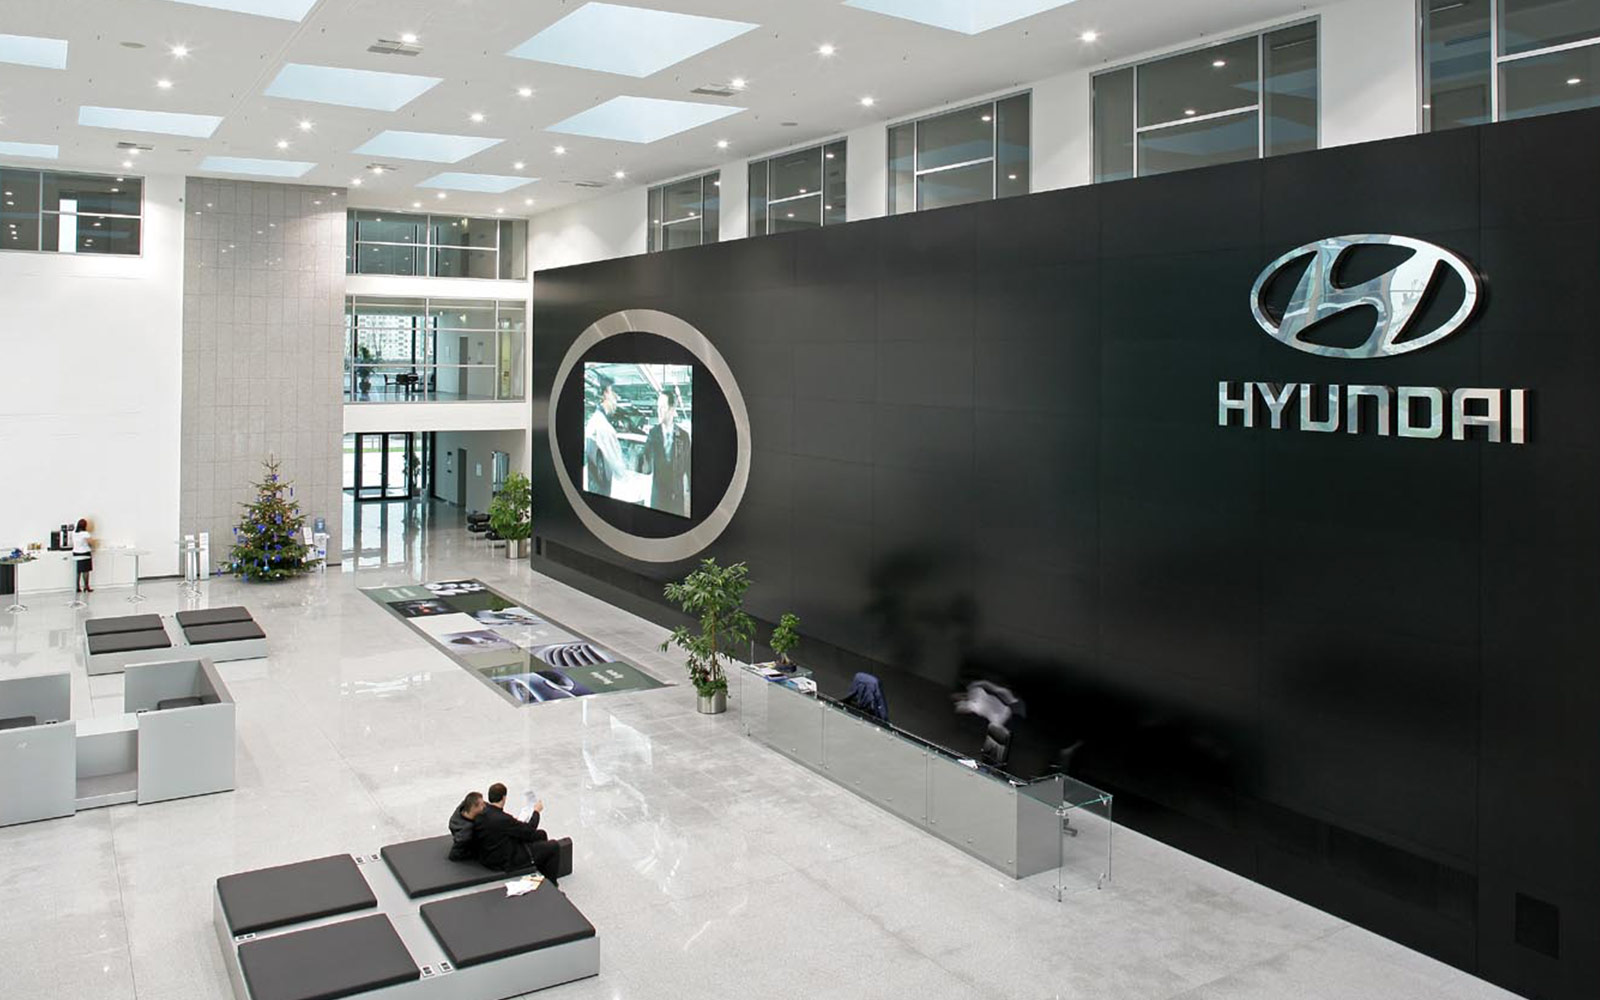 Innenausbau von Foyers – Display International für Hyundai